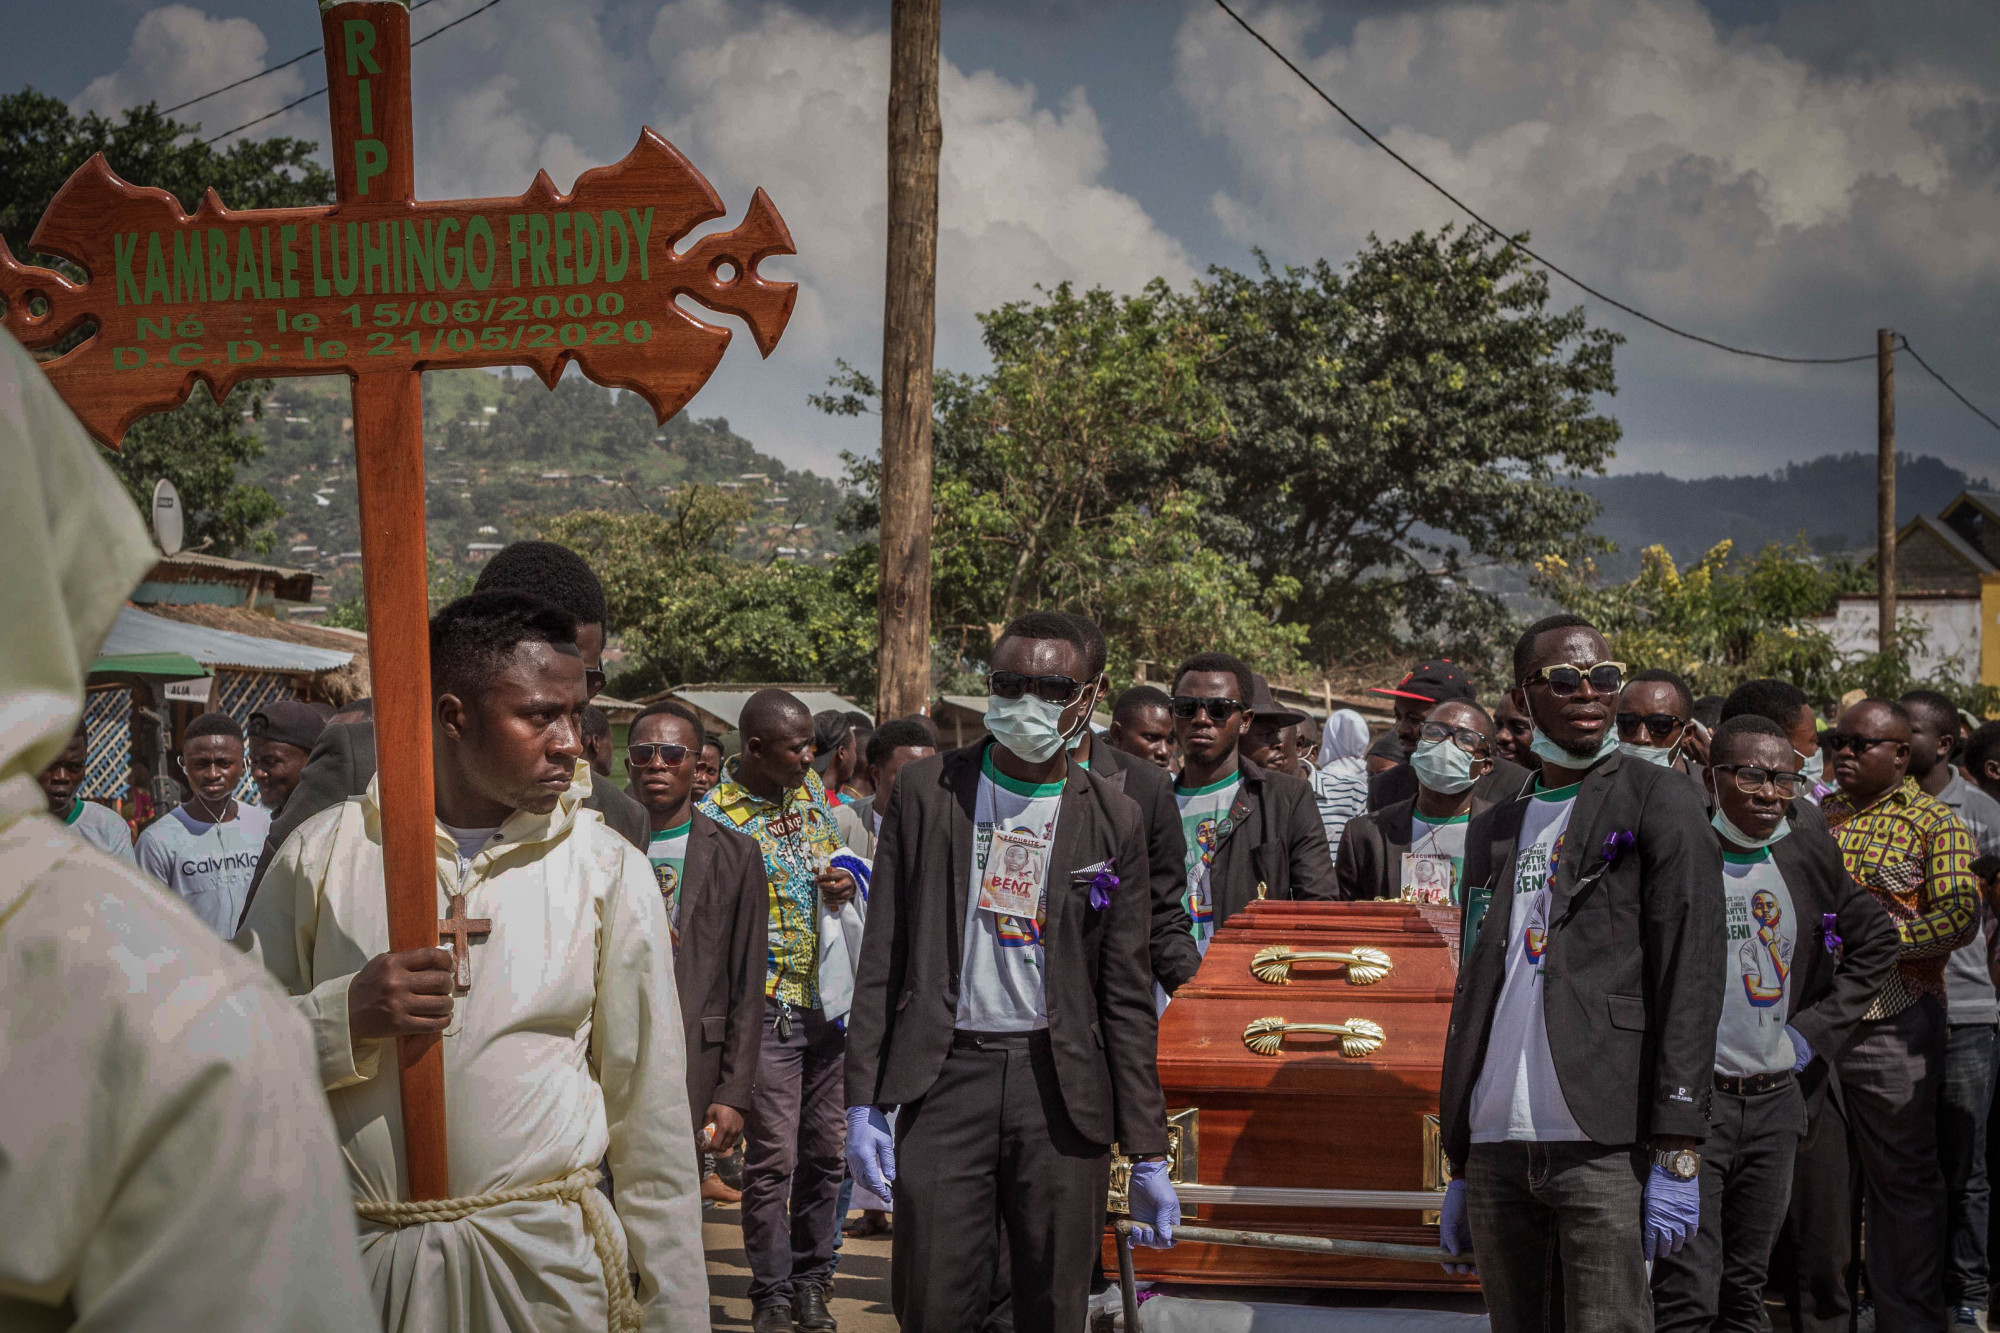 Beni, RDC,mai 2020. Des hommes portent le cercueil de Freddy Kambale, membre du mouvement de jeunesse non-violent LUCHA (Lutte pour le changement), abattu par la police lors d’une manifestation contre l’insécurité dans la ville. Selon Human Rights Watch, la violence policière est endémique en RDC. Le procès de l’auteur présumé des tirs a commencé le 8 juin. © Danny Matsongani pour la Fondation Carmignac